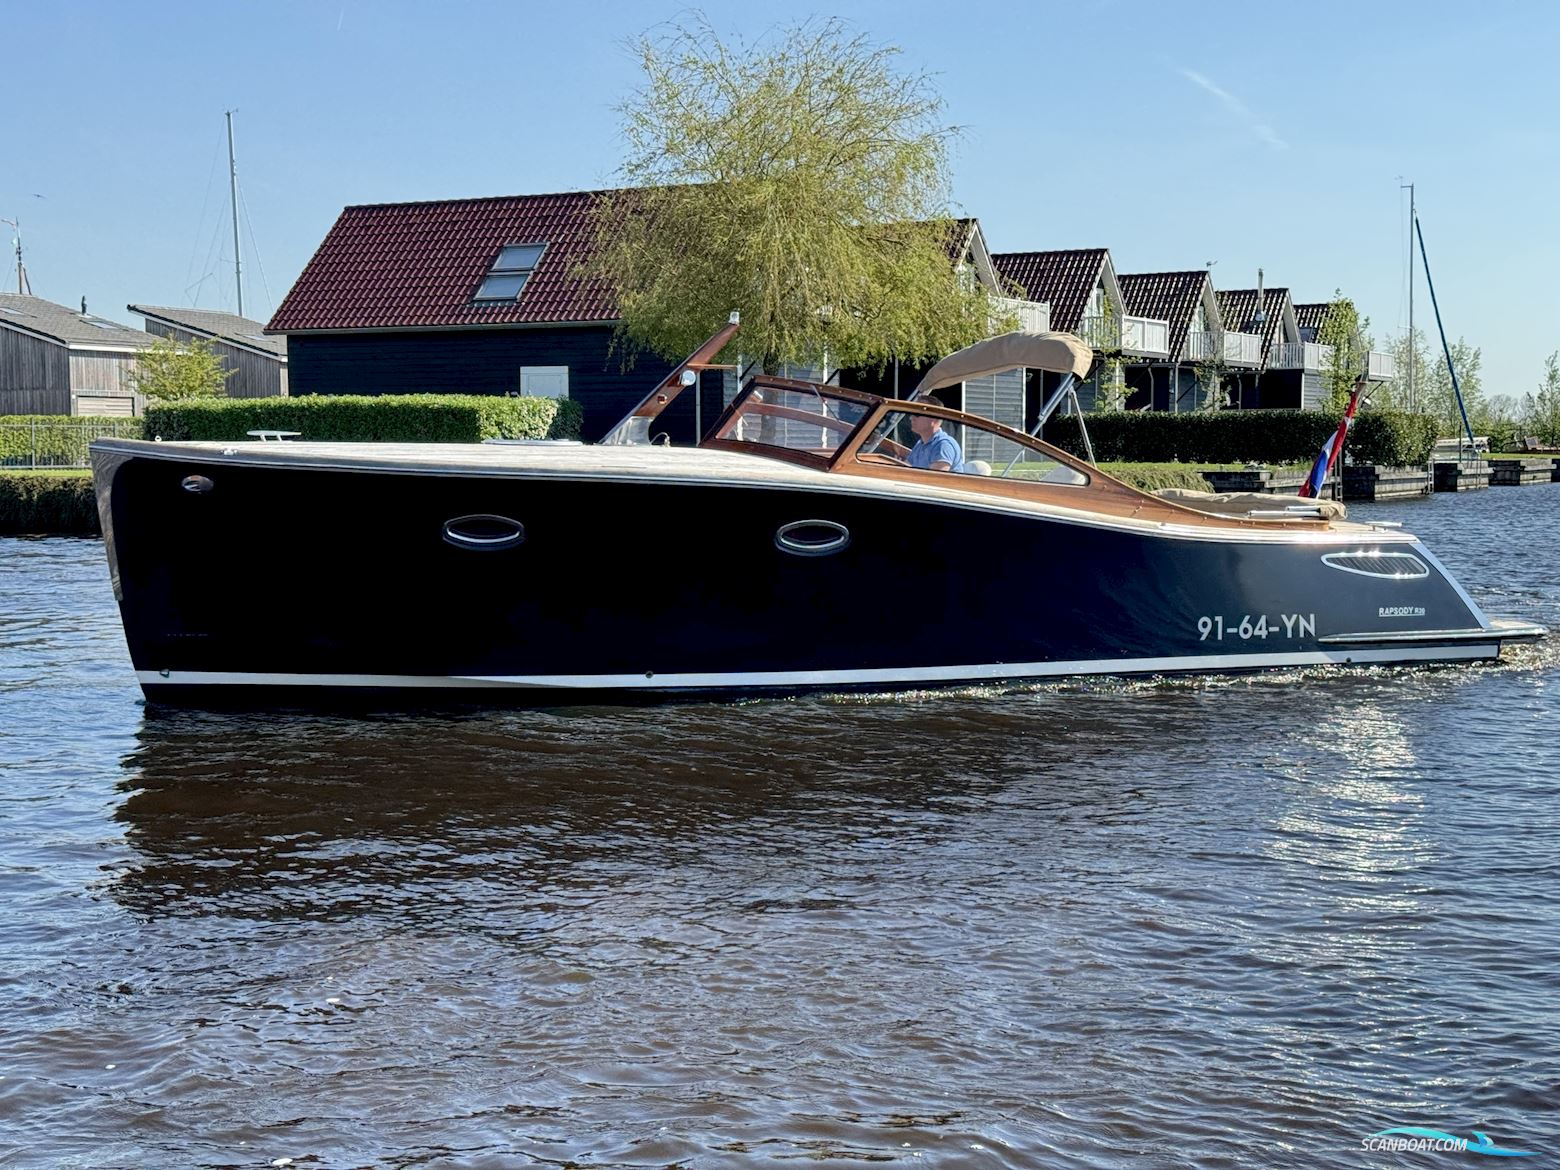 Rapsody R30 Motorbåt 2008, med Volvo Penta motor, Holland